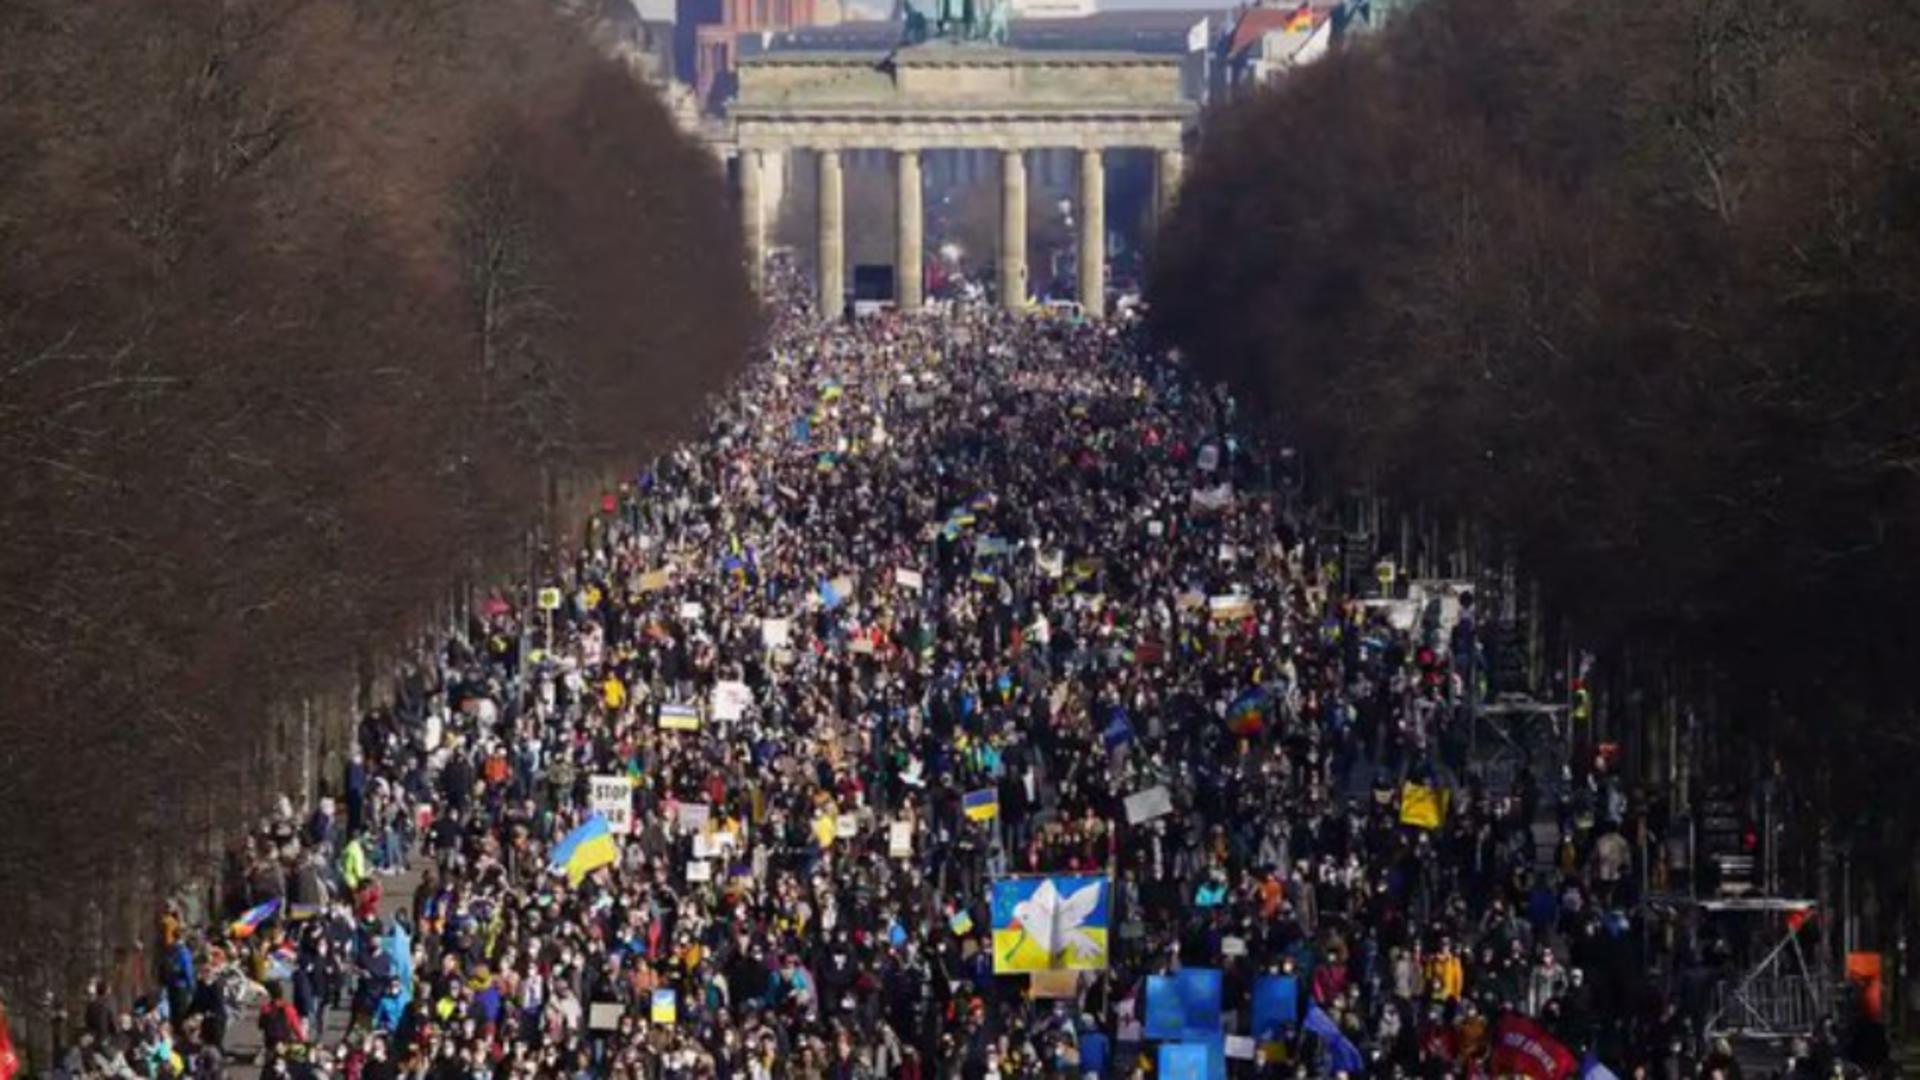 IMAGIN fabuloase cu protestul germanilor împotriva războiului din Ucraina Foto: Twitter.com